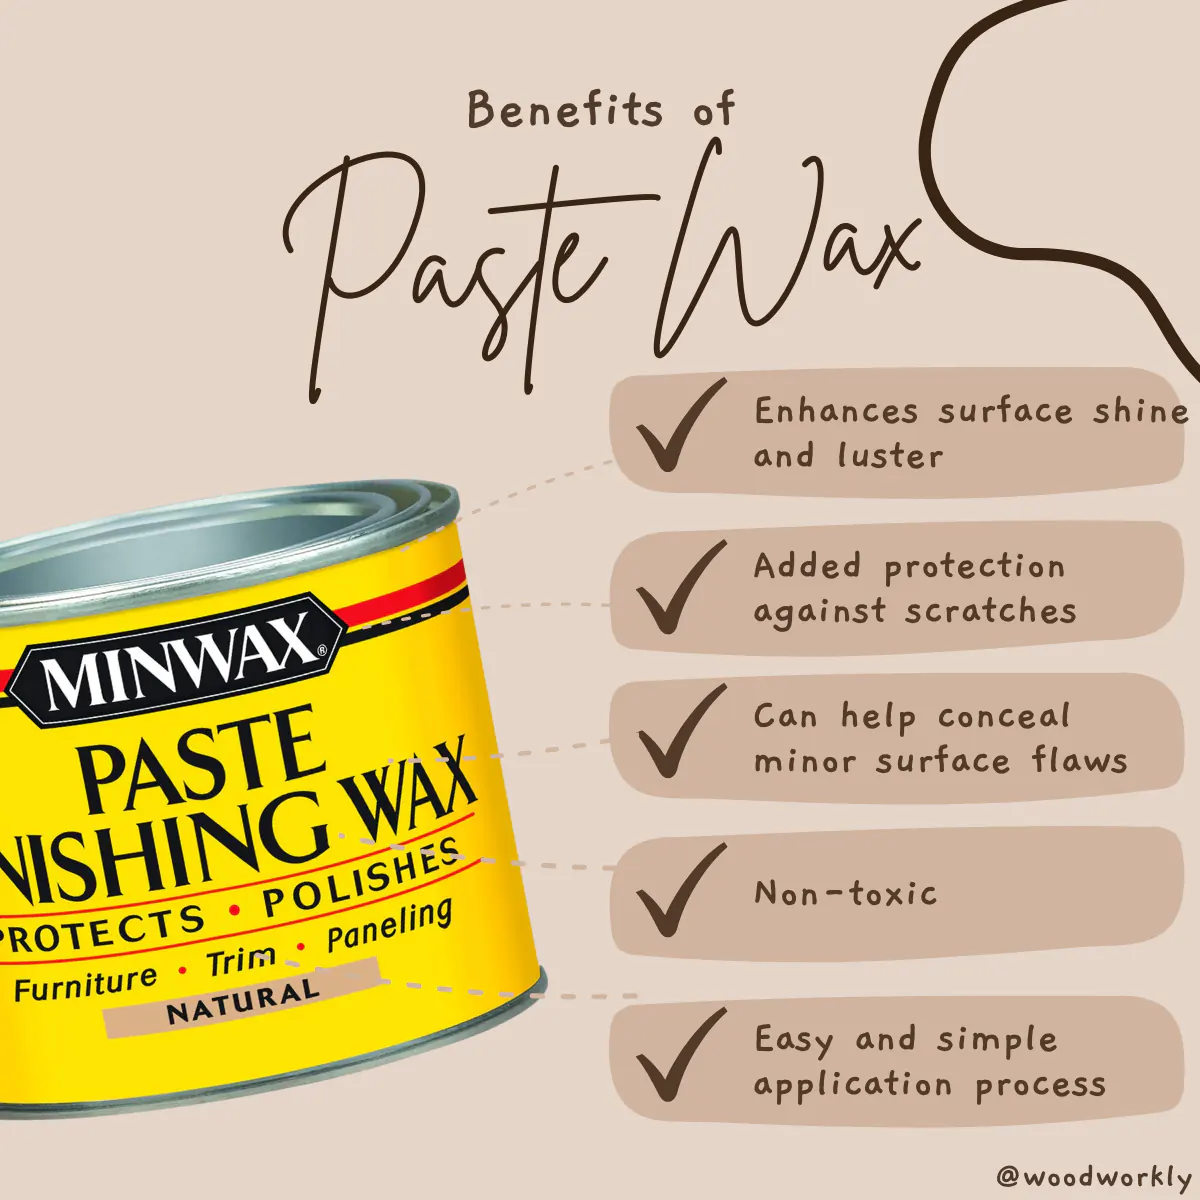 Benefits of paste wax